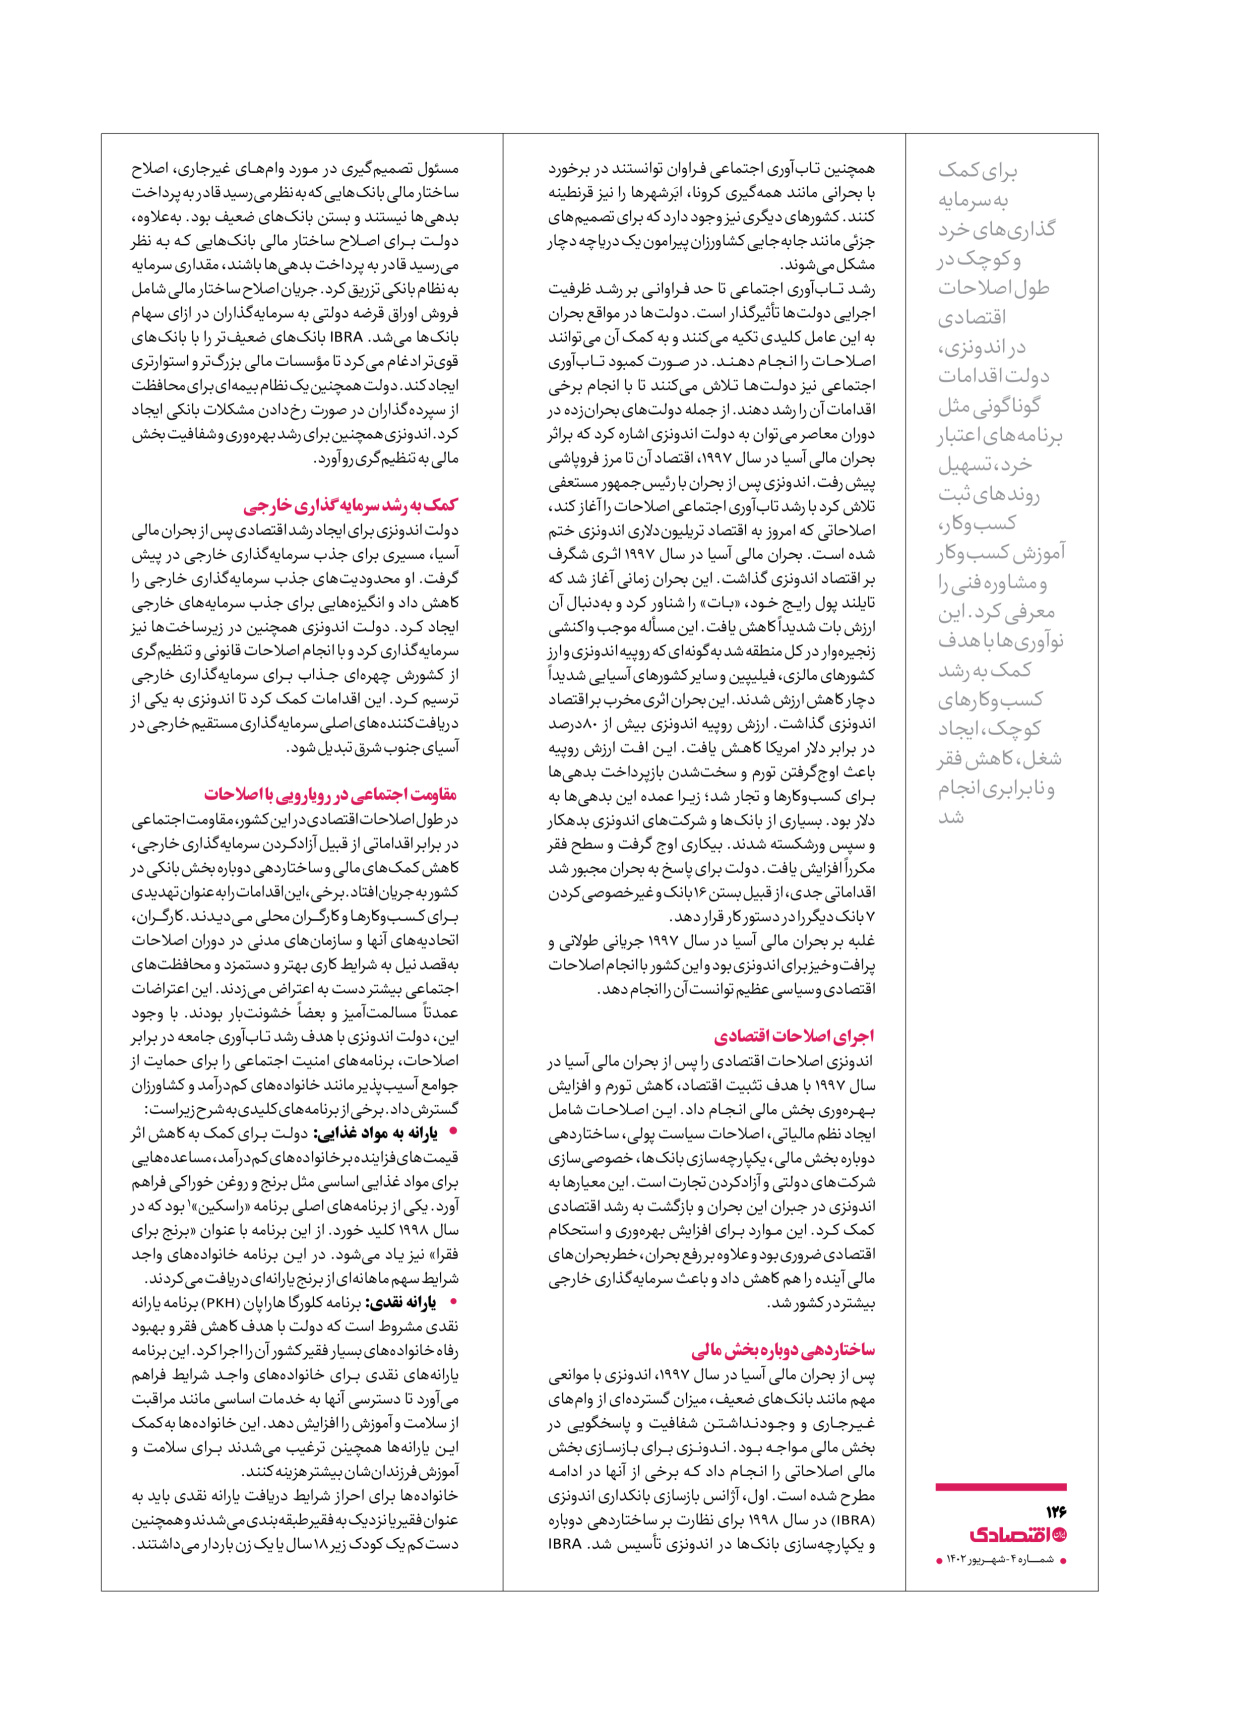 روزنامه ایران اقتصادی - ویژه نامه اقتصادی۴ - ۰۴ شهریور ۱۴۰۲ - صفحه ۱۲۶